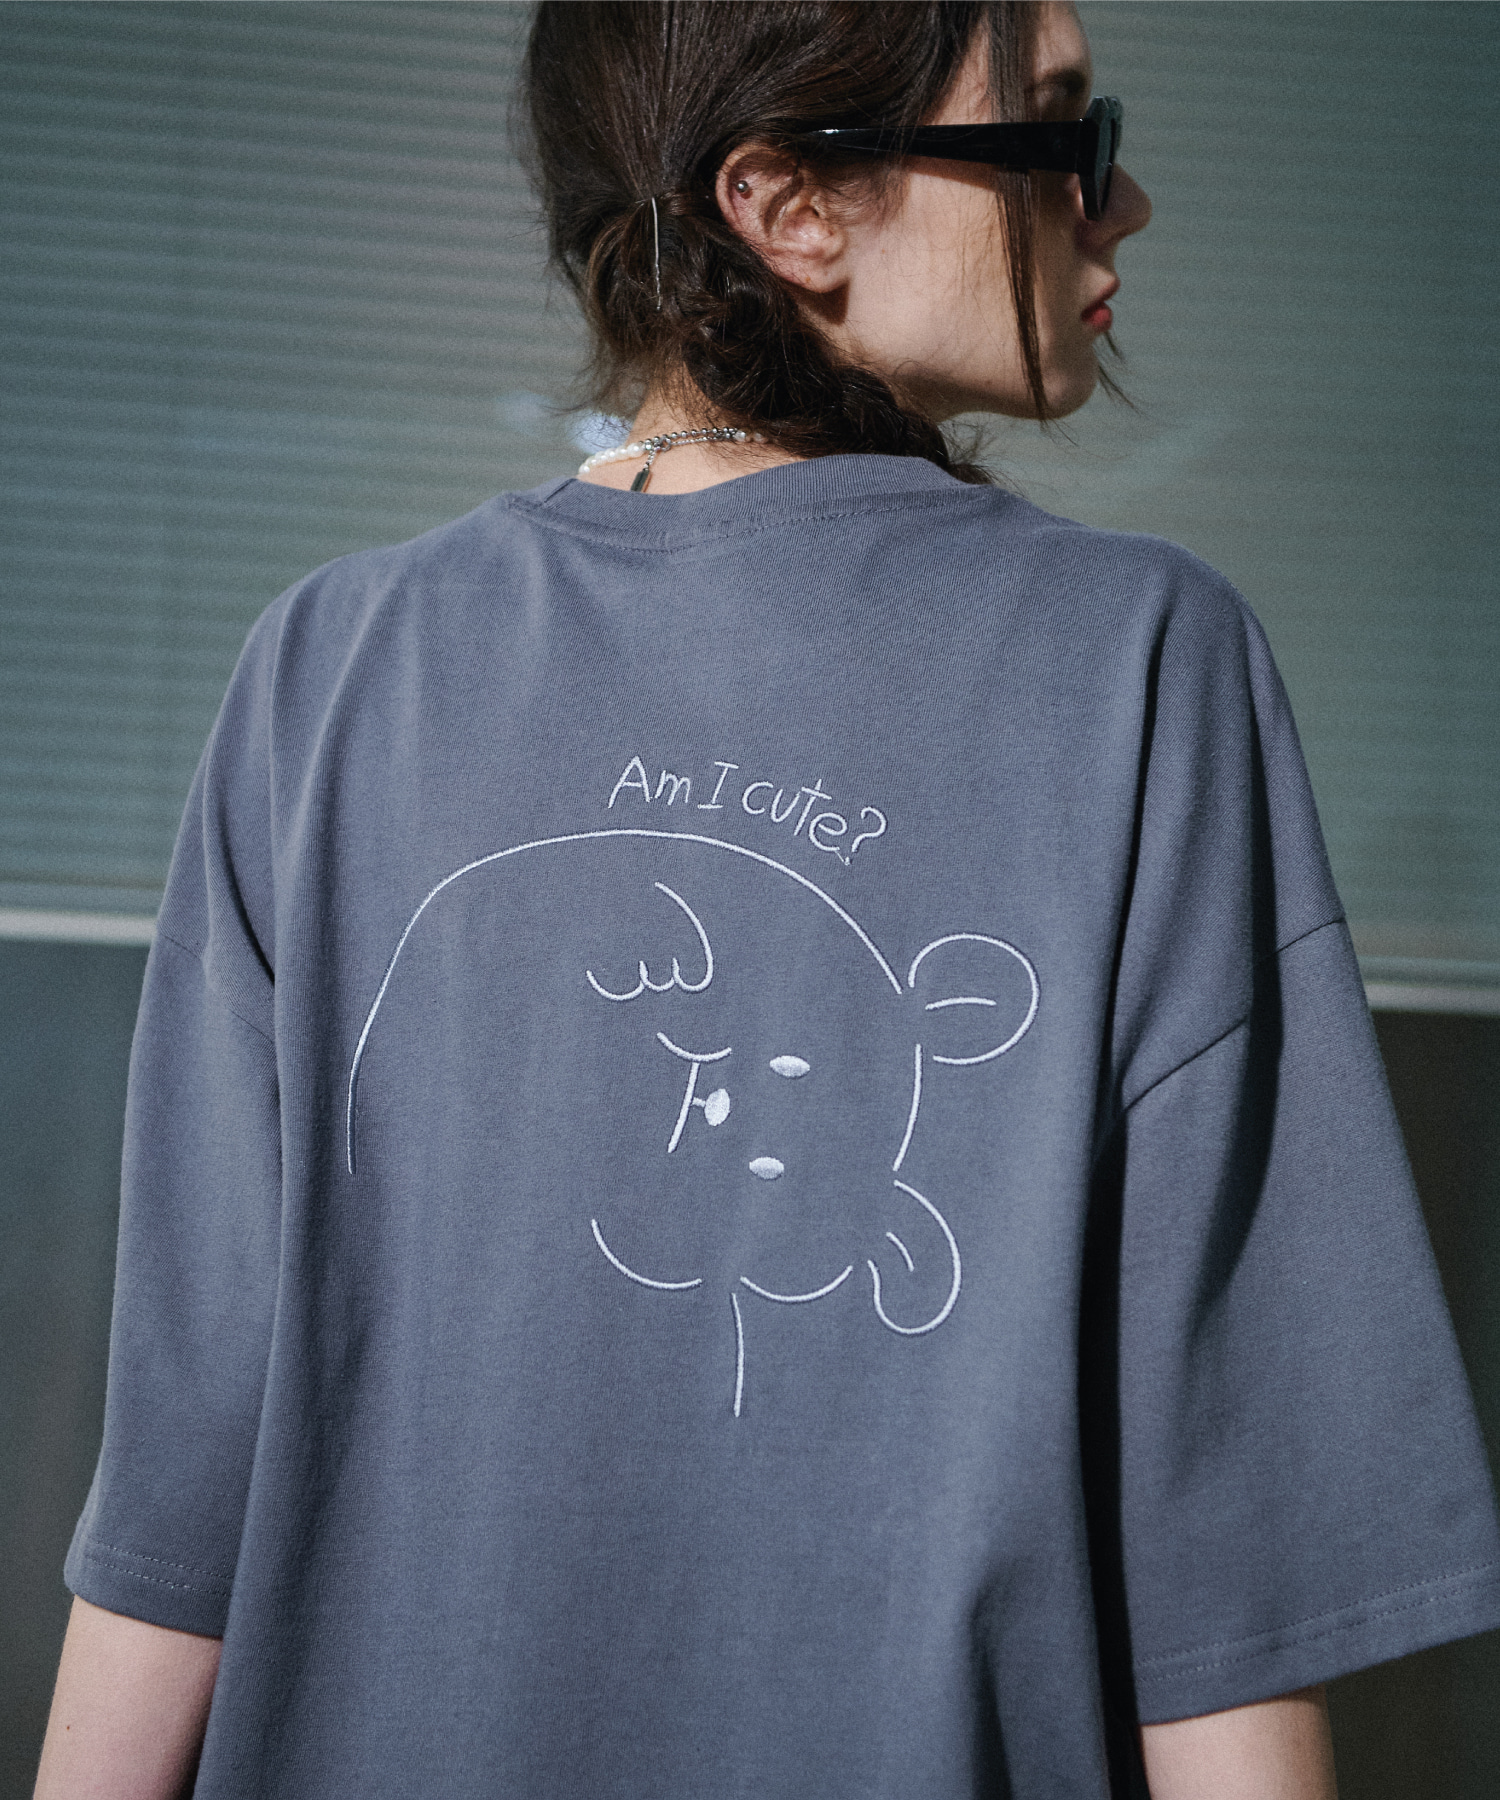 韓國CPGN STUDIO - Cutie Bear Embroidery Short Sleeve T-shirt Castle Rock